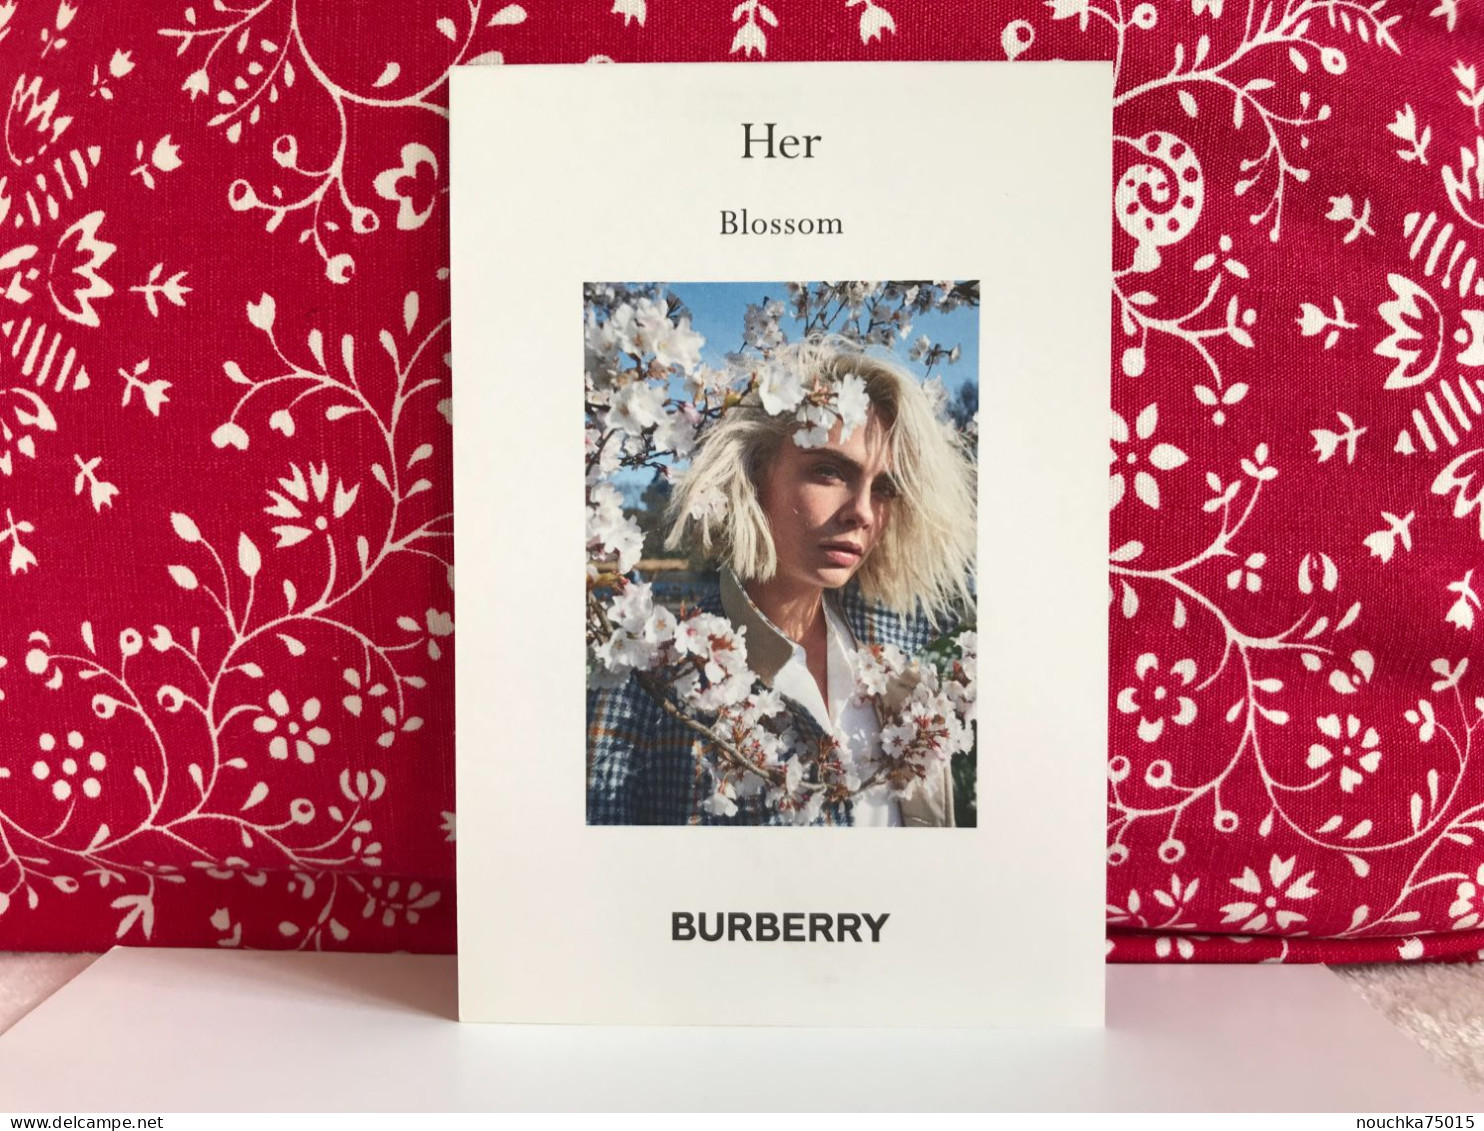 Burberry - Her Blossom - Modernas (desde 1961)